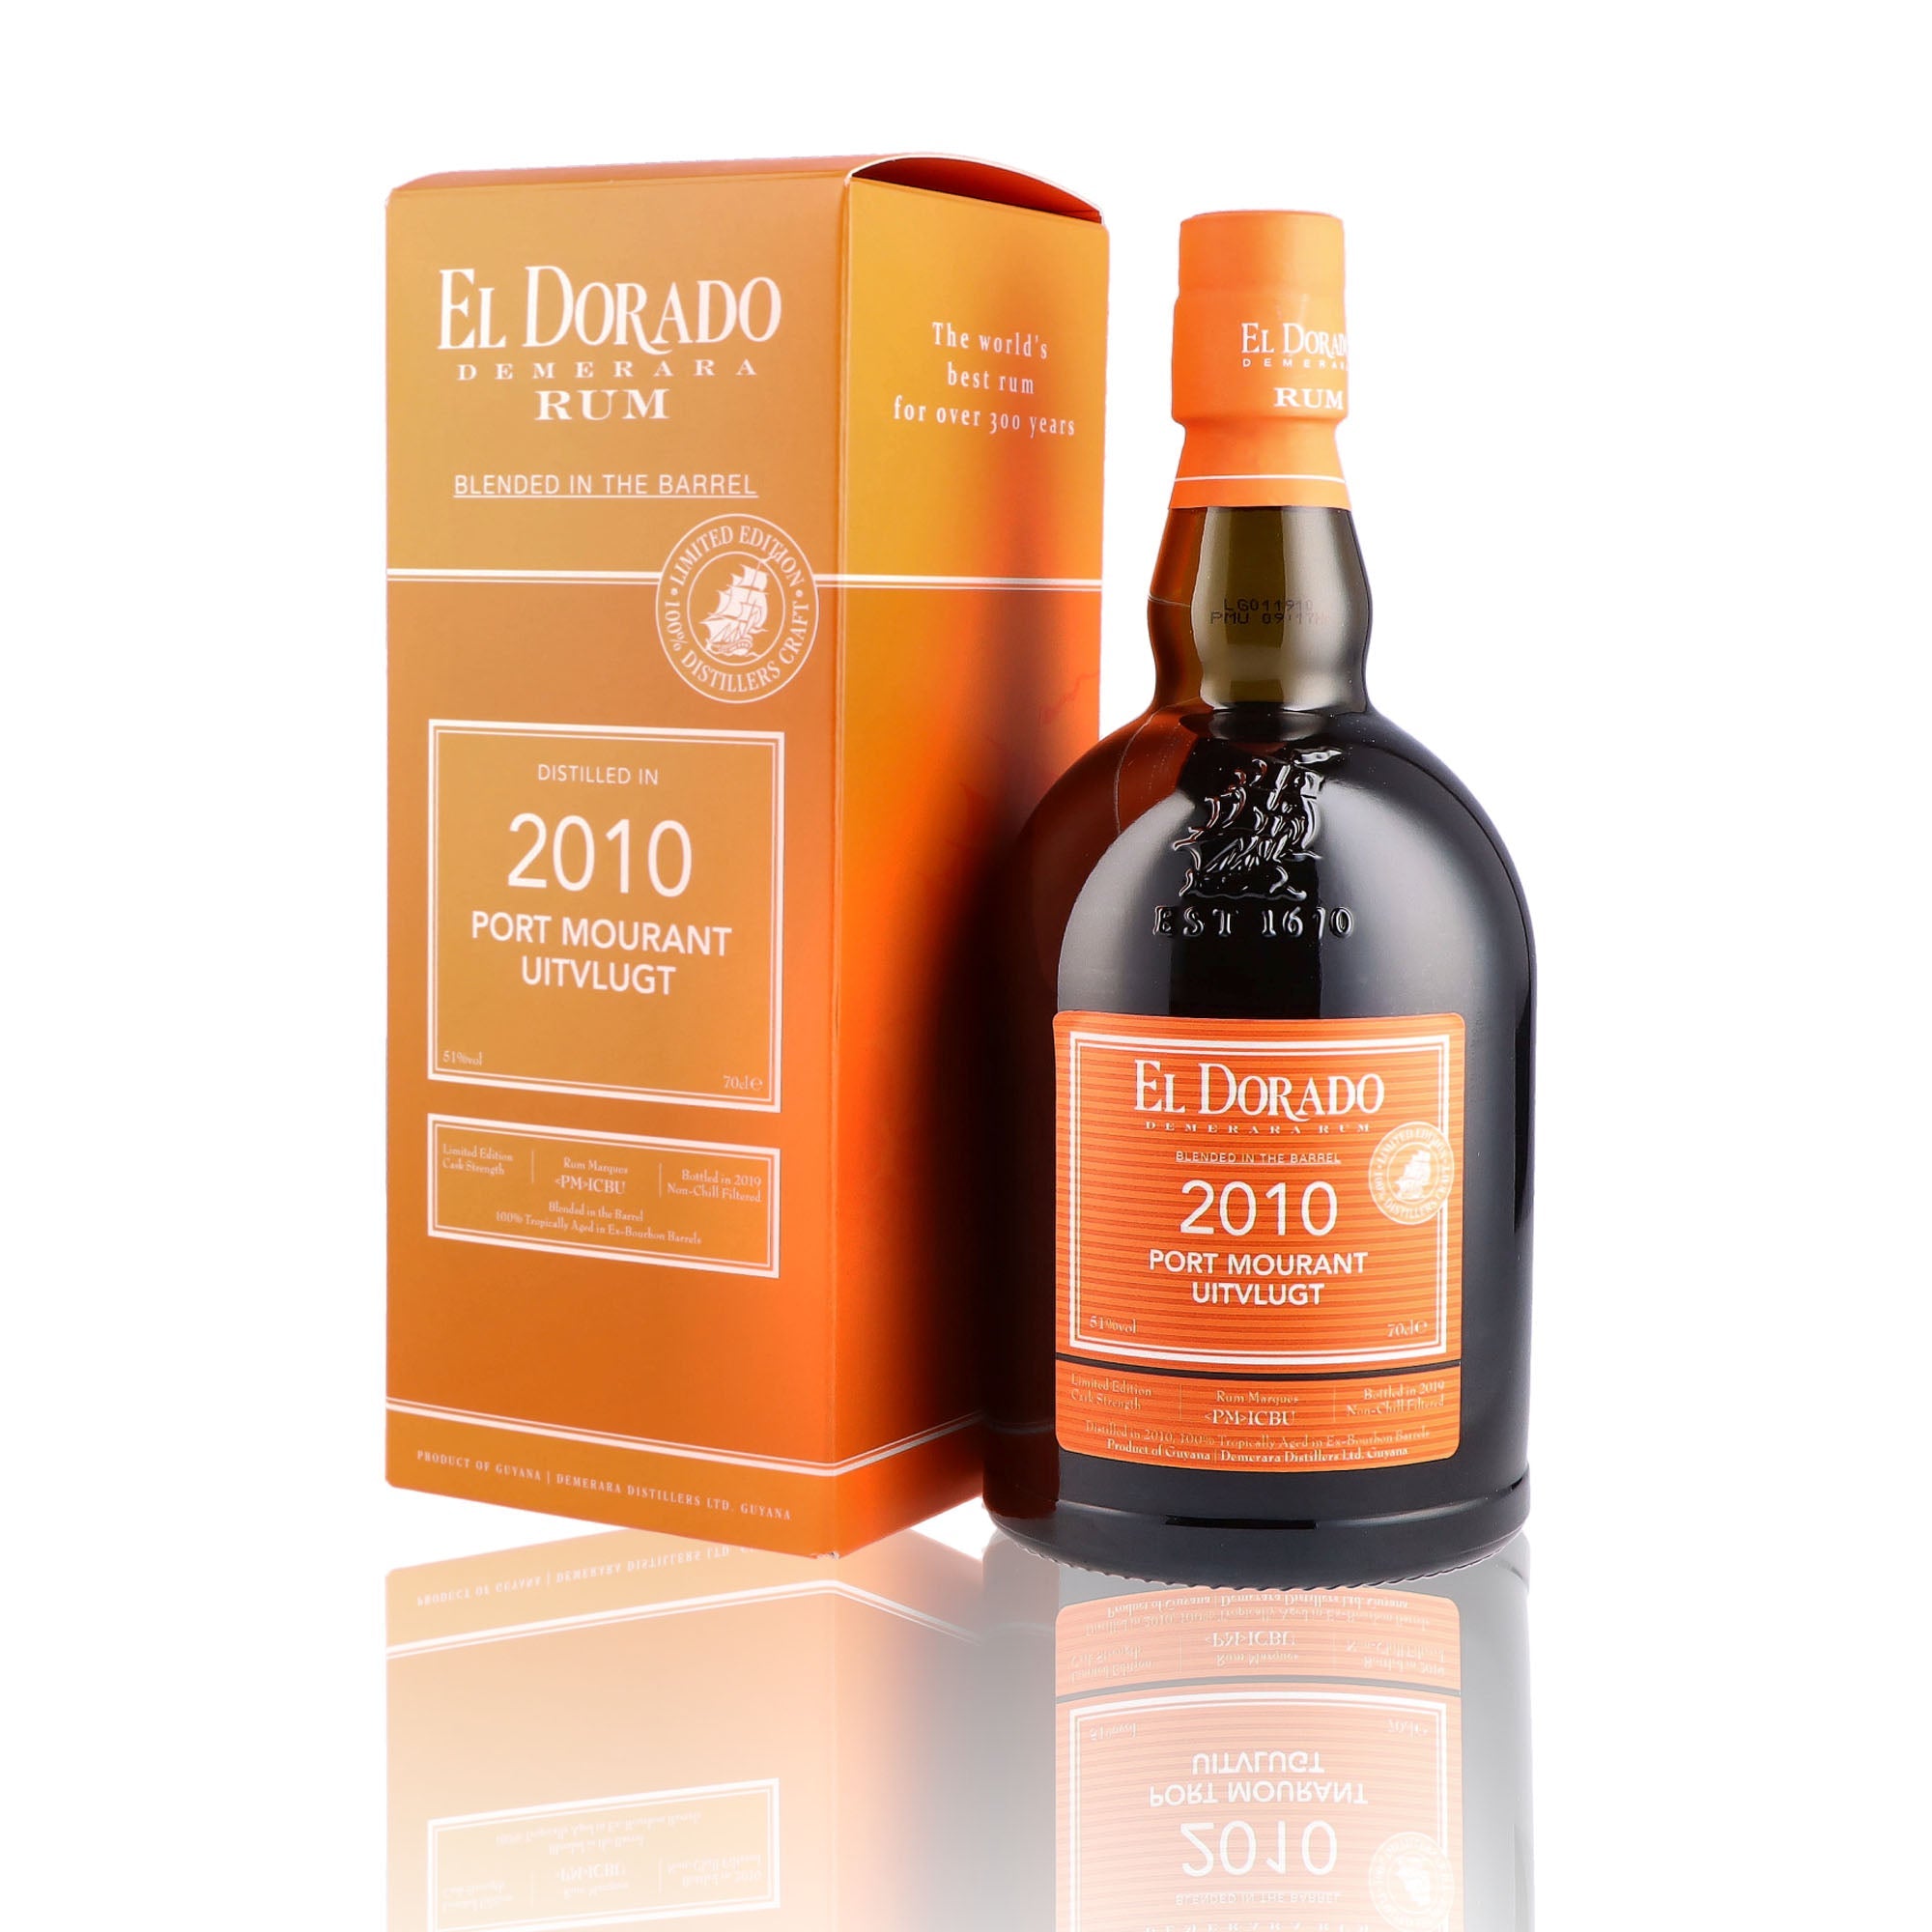 Une bouteille de rhum vieux, de la marque El Dorado, nommée Port Mourant Uitvlugt, du millésime 2010.